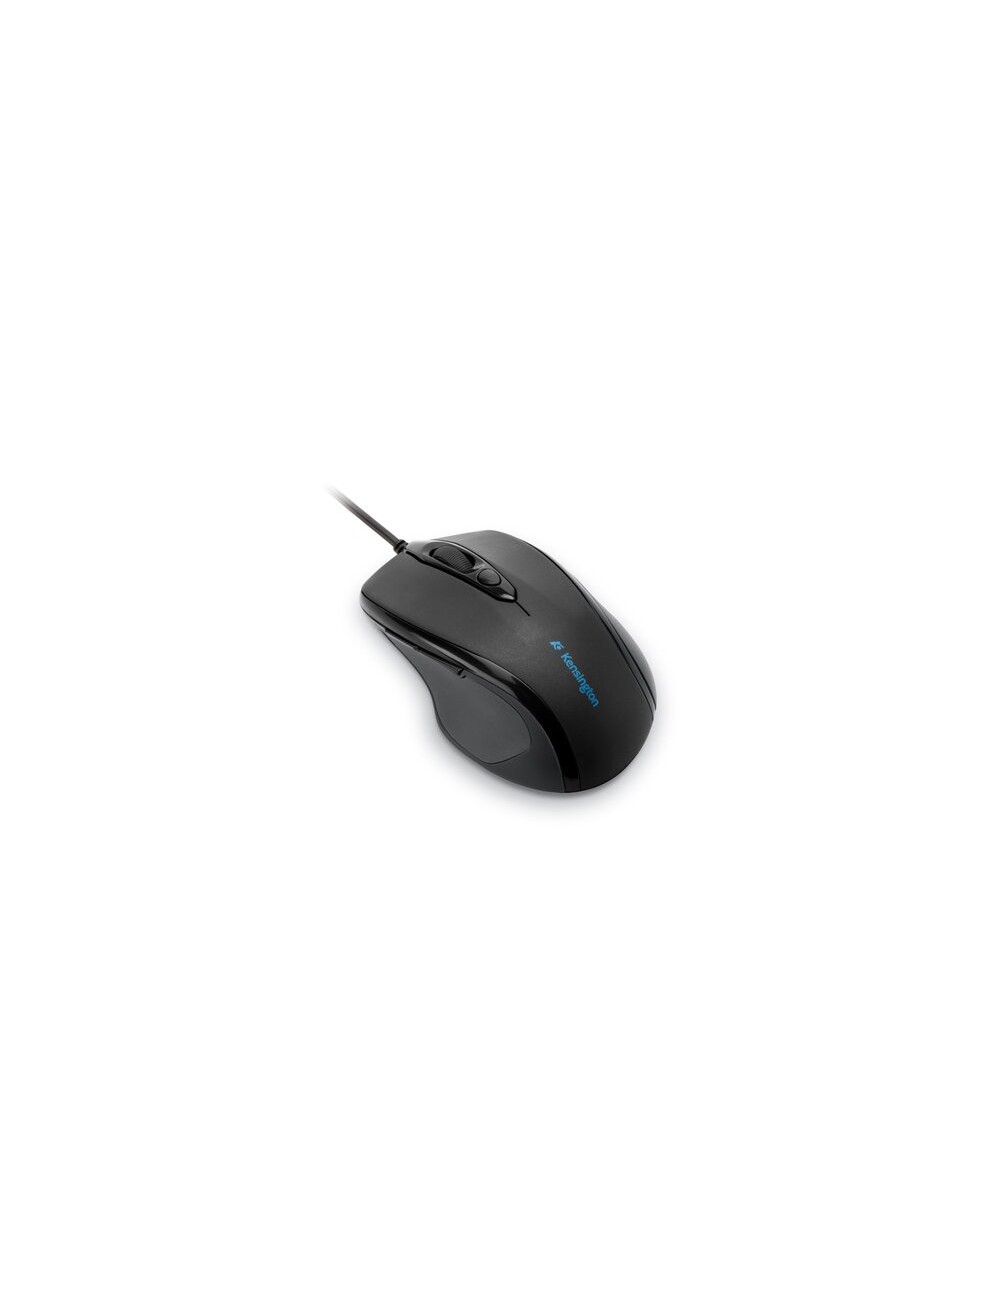 Kensington Mouse Pro Fit® di medie dimensioni con cavo